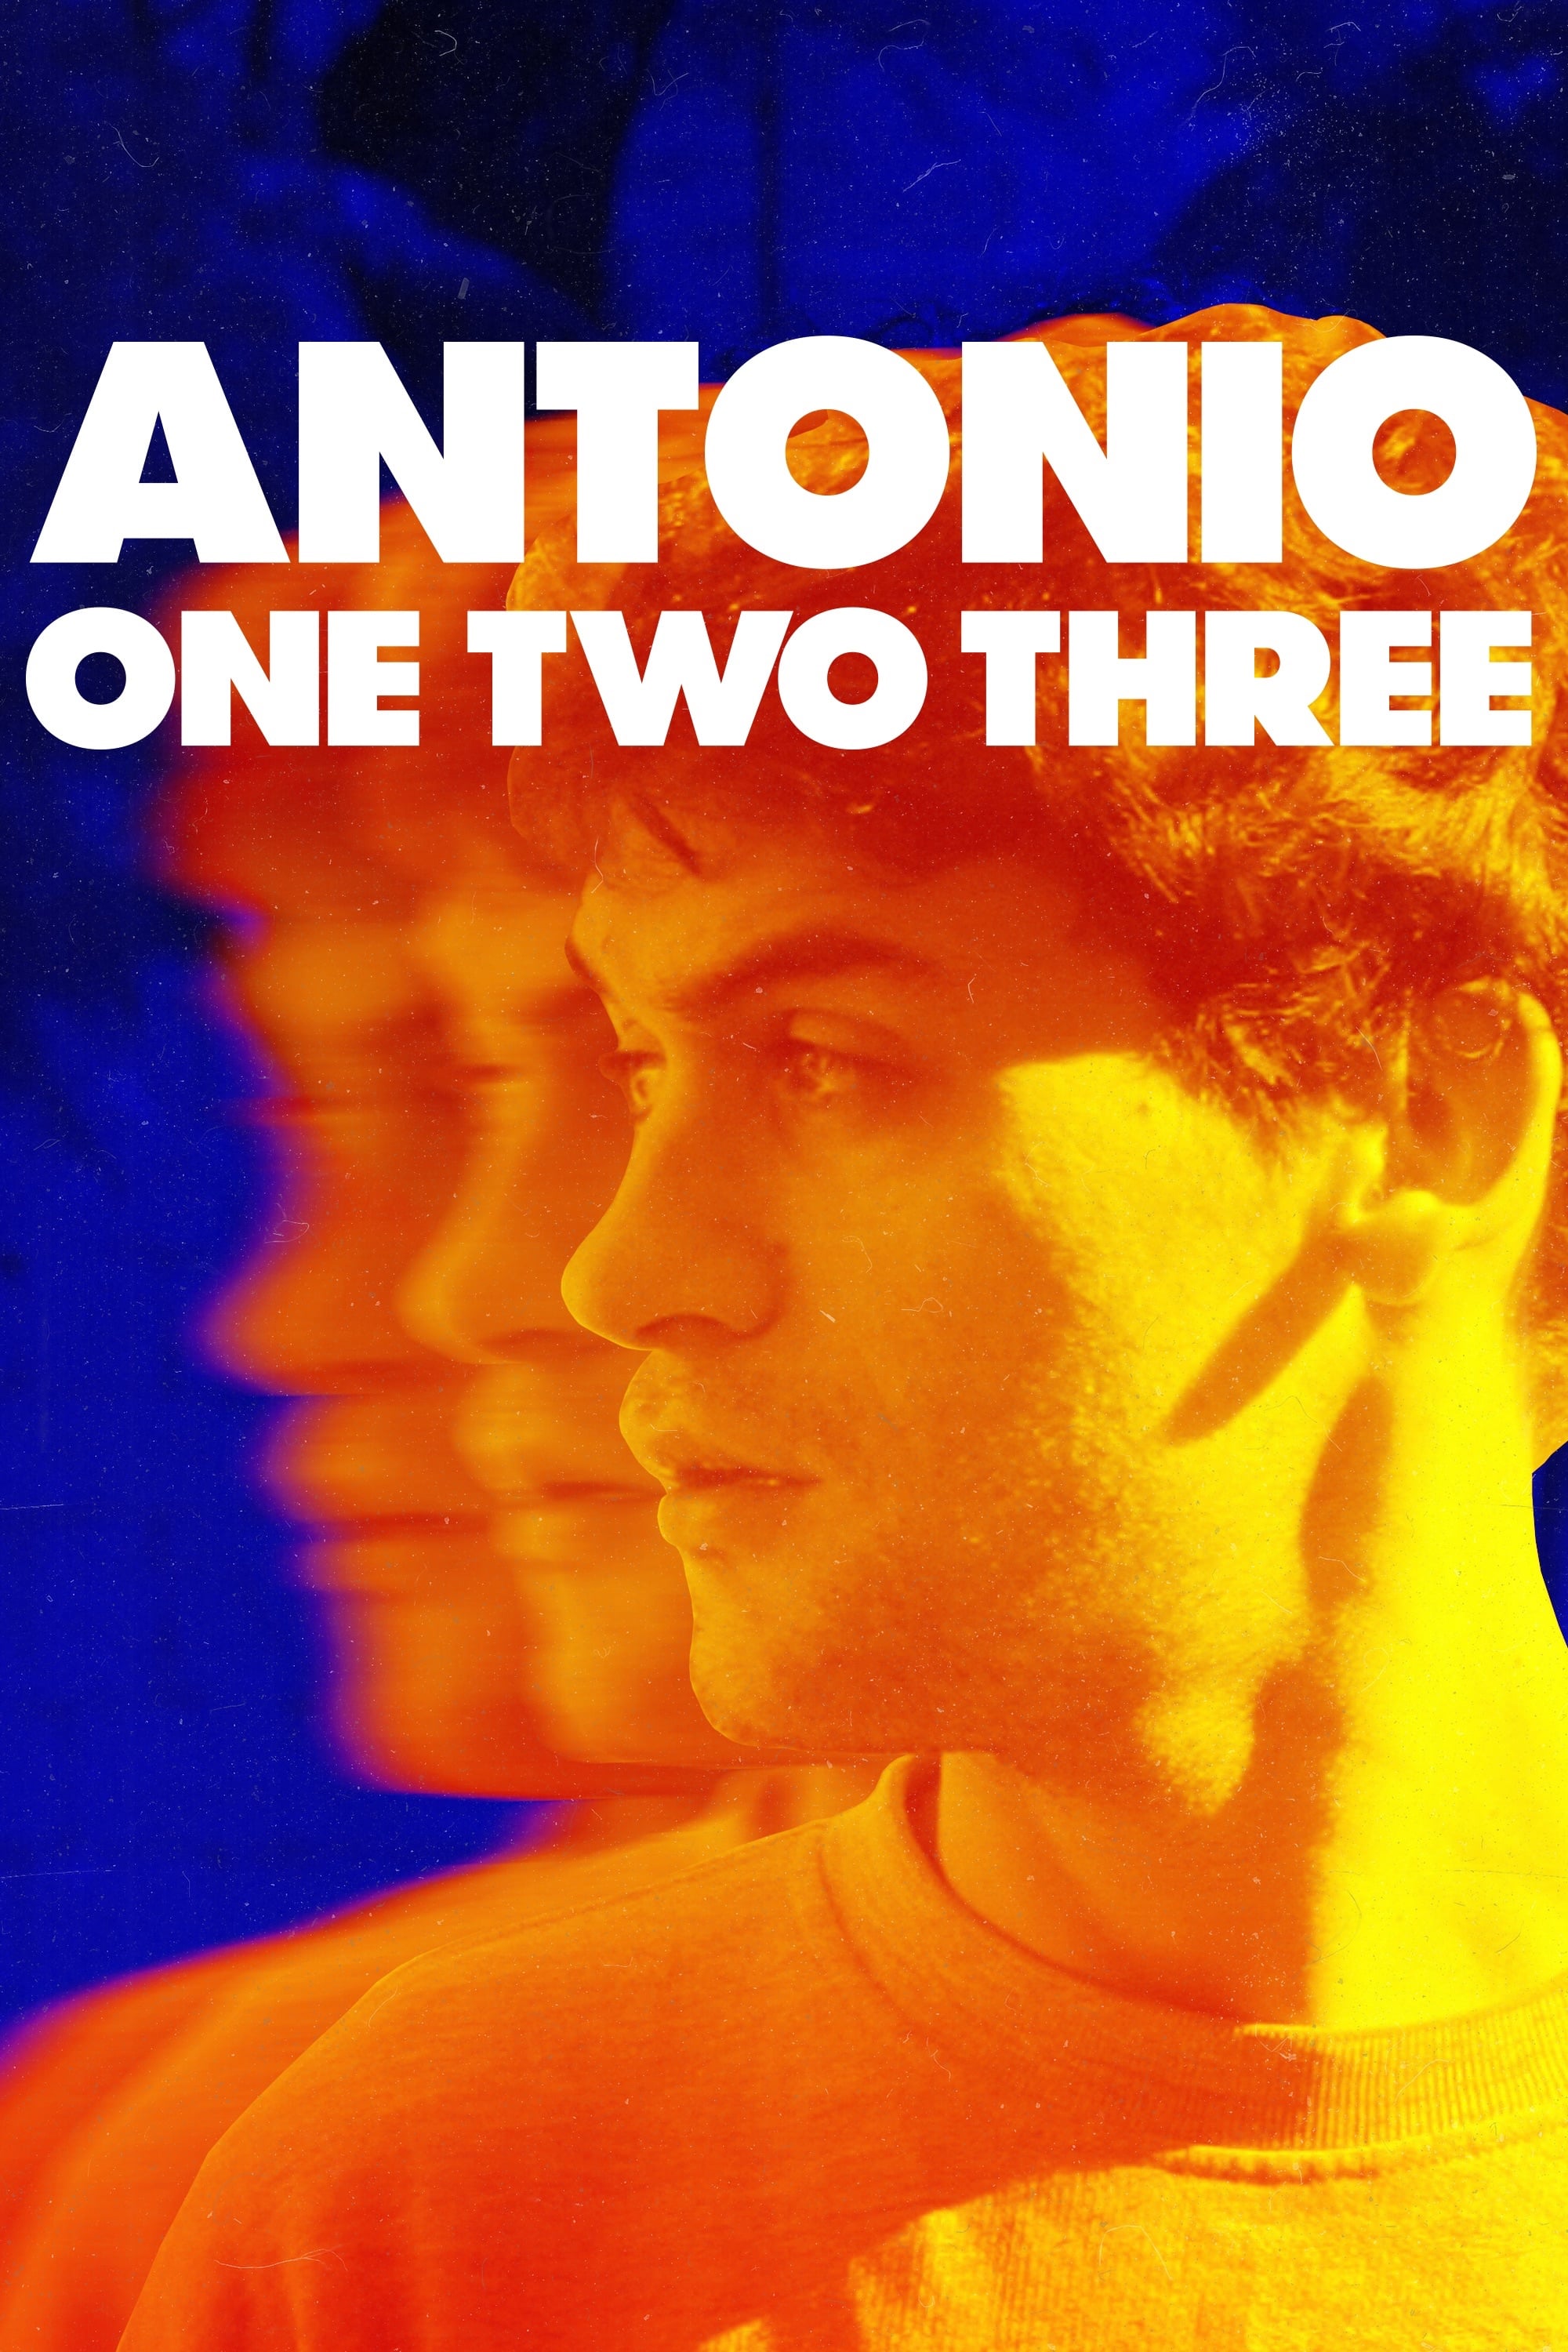 Antonio One Two Three